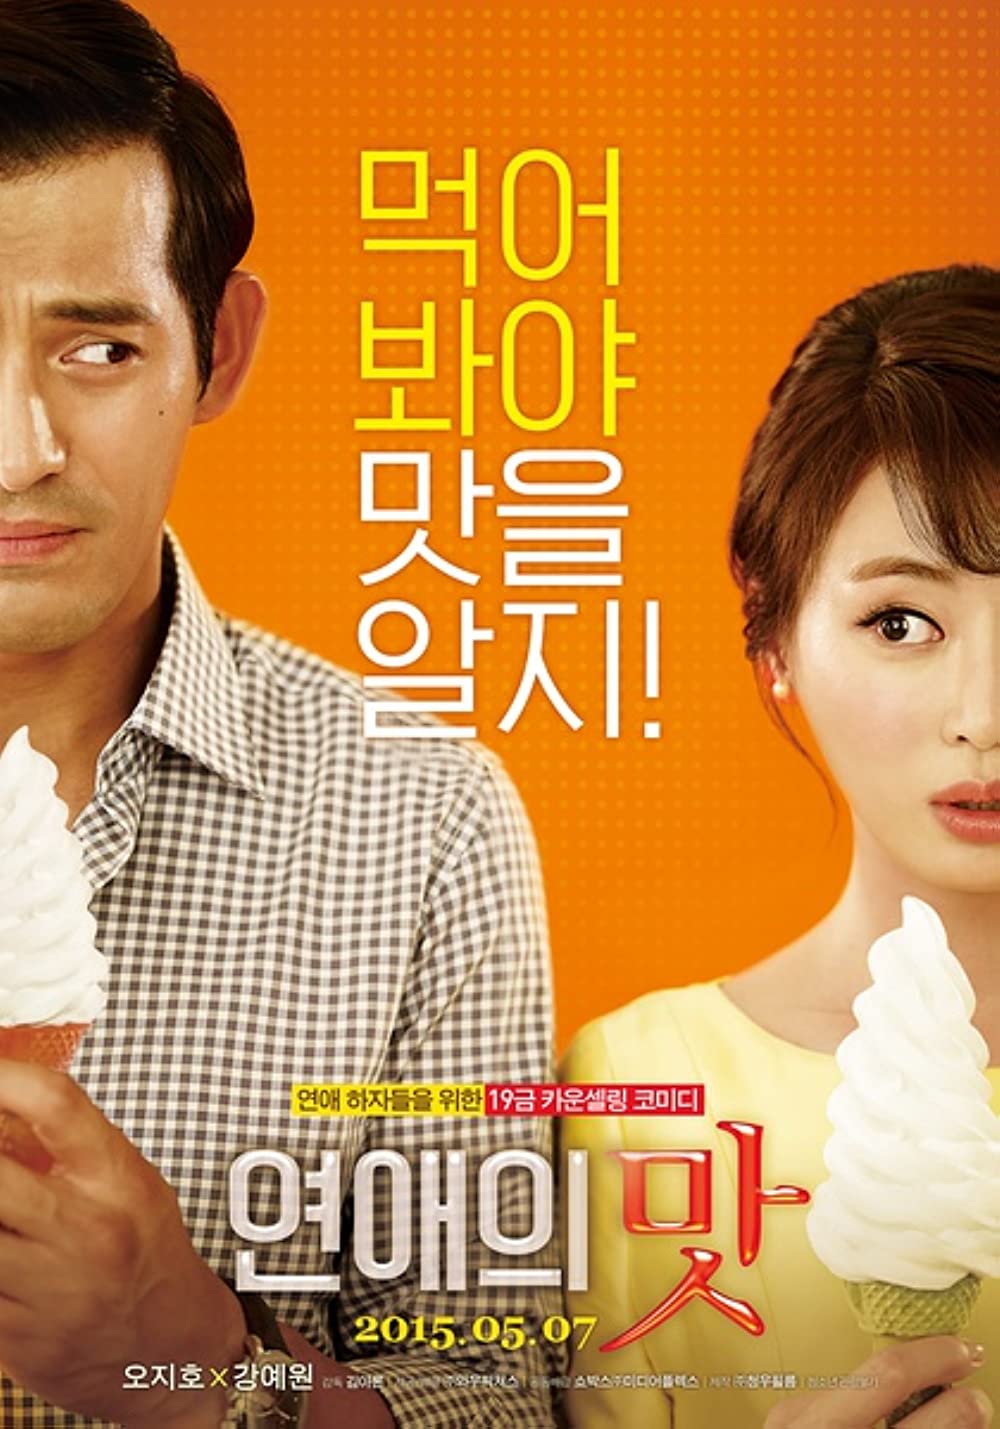 18+ korean movies - Love Clinic